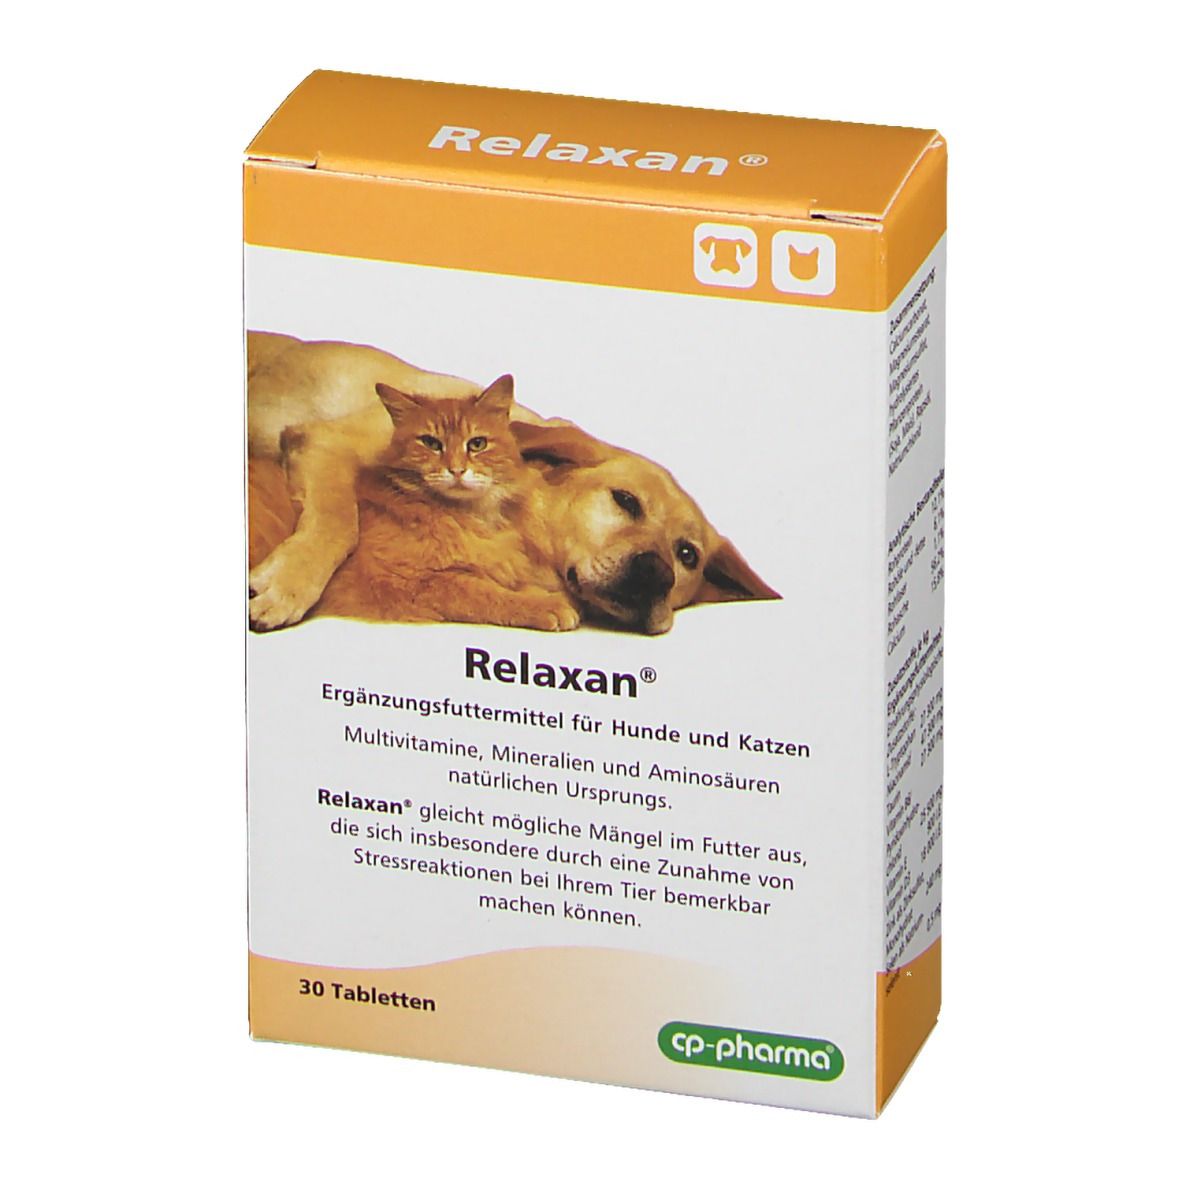 cp-pharma® Relaxan® complément alimentaire pour chiens et chats